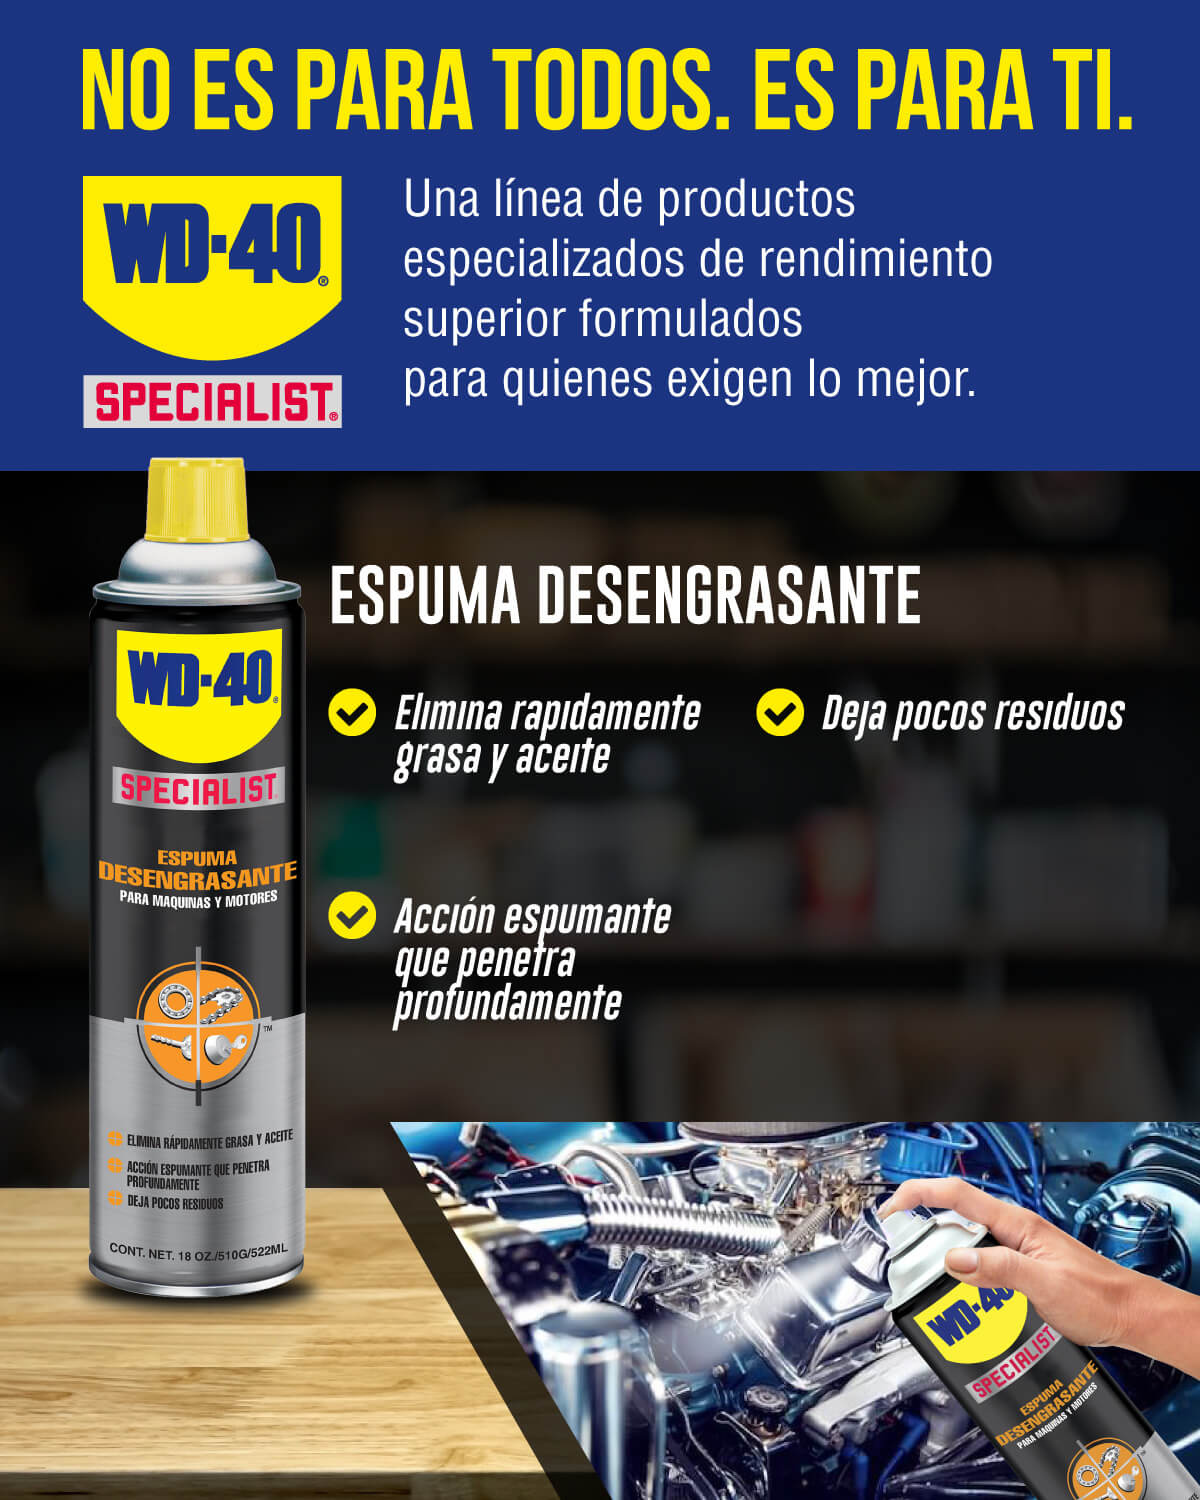 WD40 Specialist Specialist Espuma desengrasante